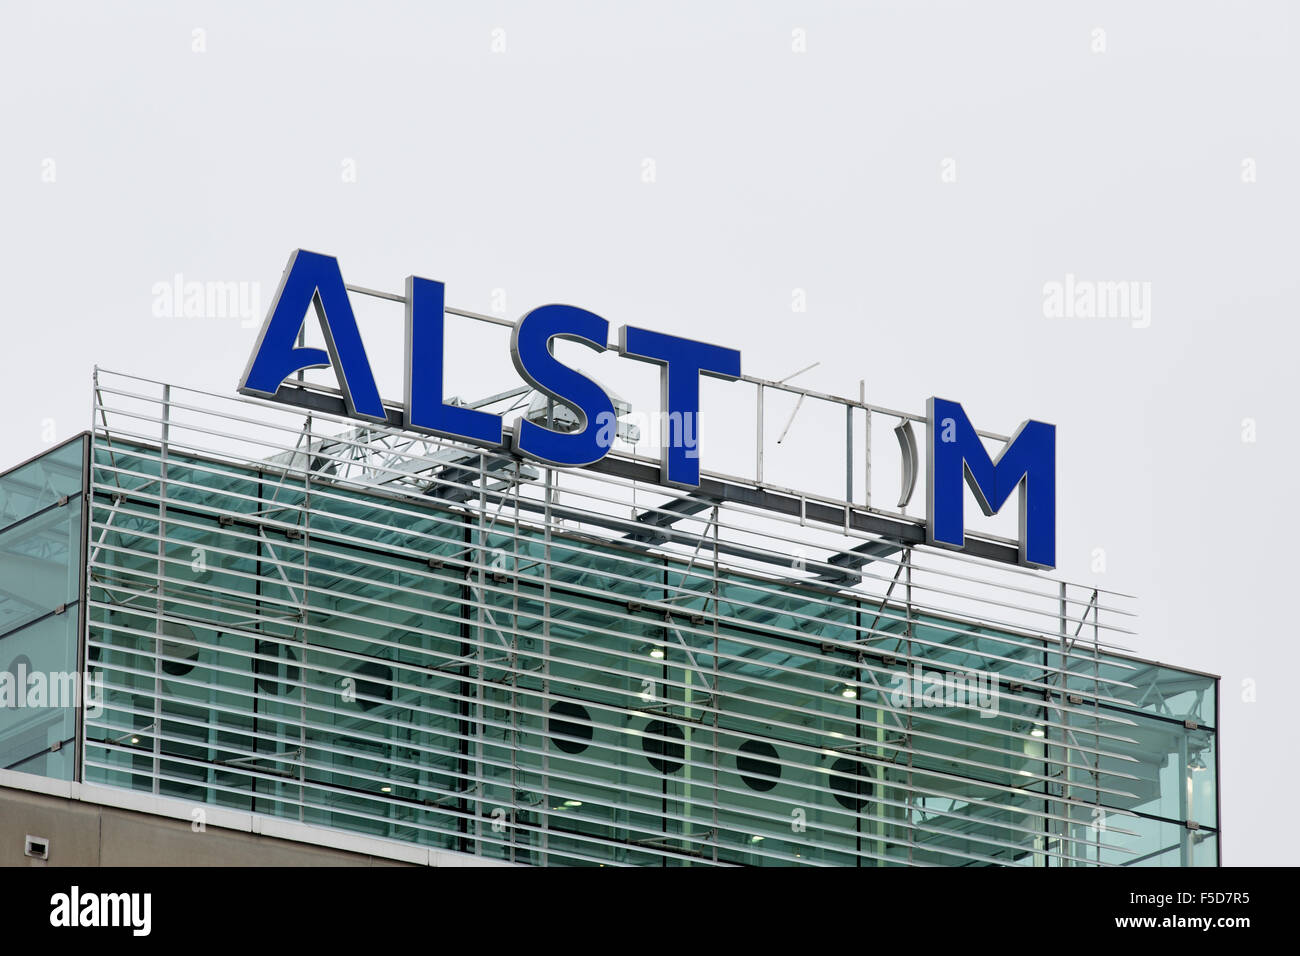 Baden, Suisse. 2e novembre 2015. Le logo Alstom sur le toit du quartier général de l'énergie thermique en cours de suppression pour l'acquisition et fusion de General Electric. Carsten Reisinger/Alamy Live News. Banque D'Images